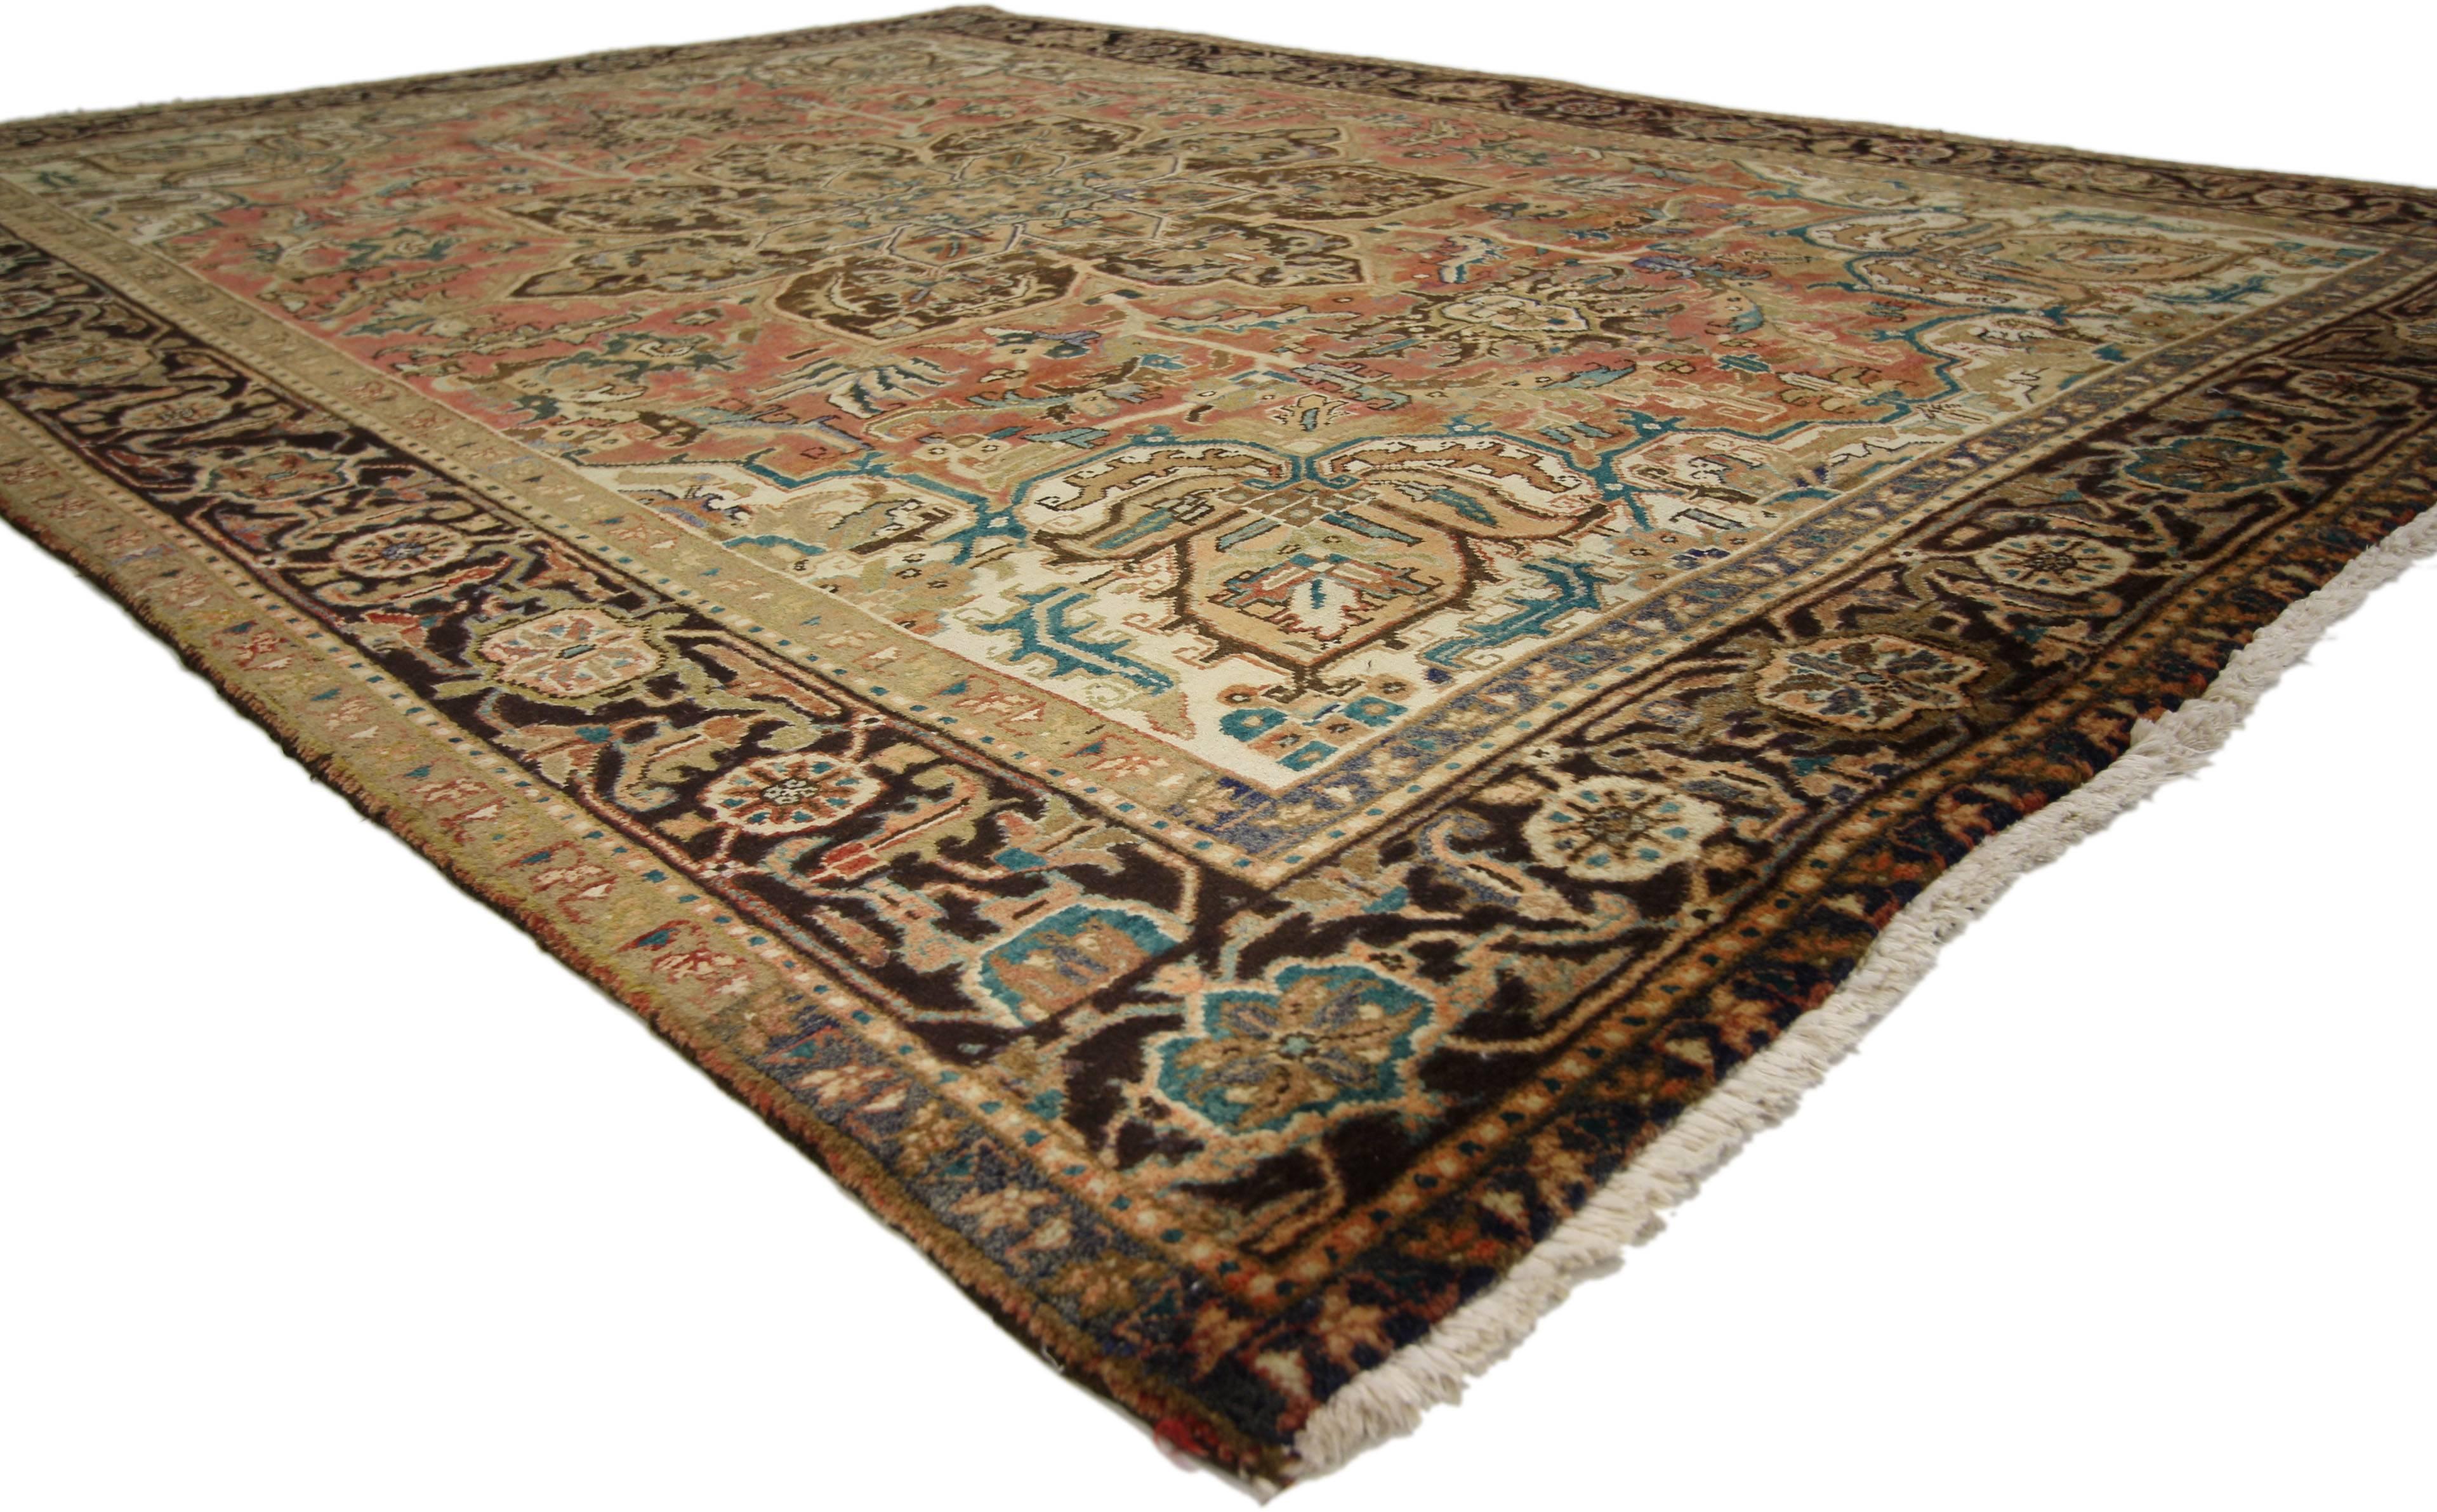 75554, Traditionnel Vintage Persian Heriz Rug avec Colonial Revival Style 07'00 x 09'10. Ce tapis Persan Heriz en laine noué à la main et lavé à l'ancienne présente un grand médaillon octofeuille concentrique avec des pendentifs en forme de